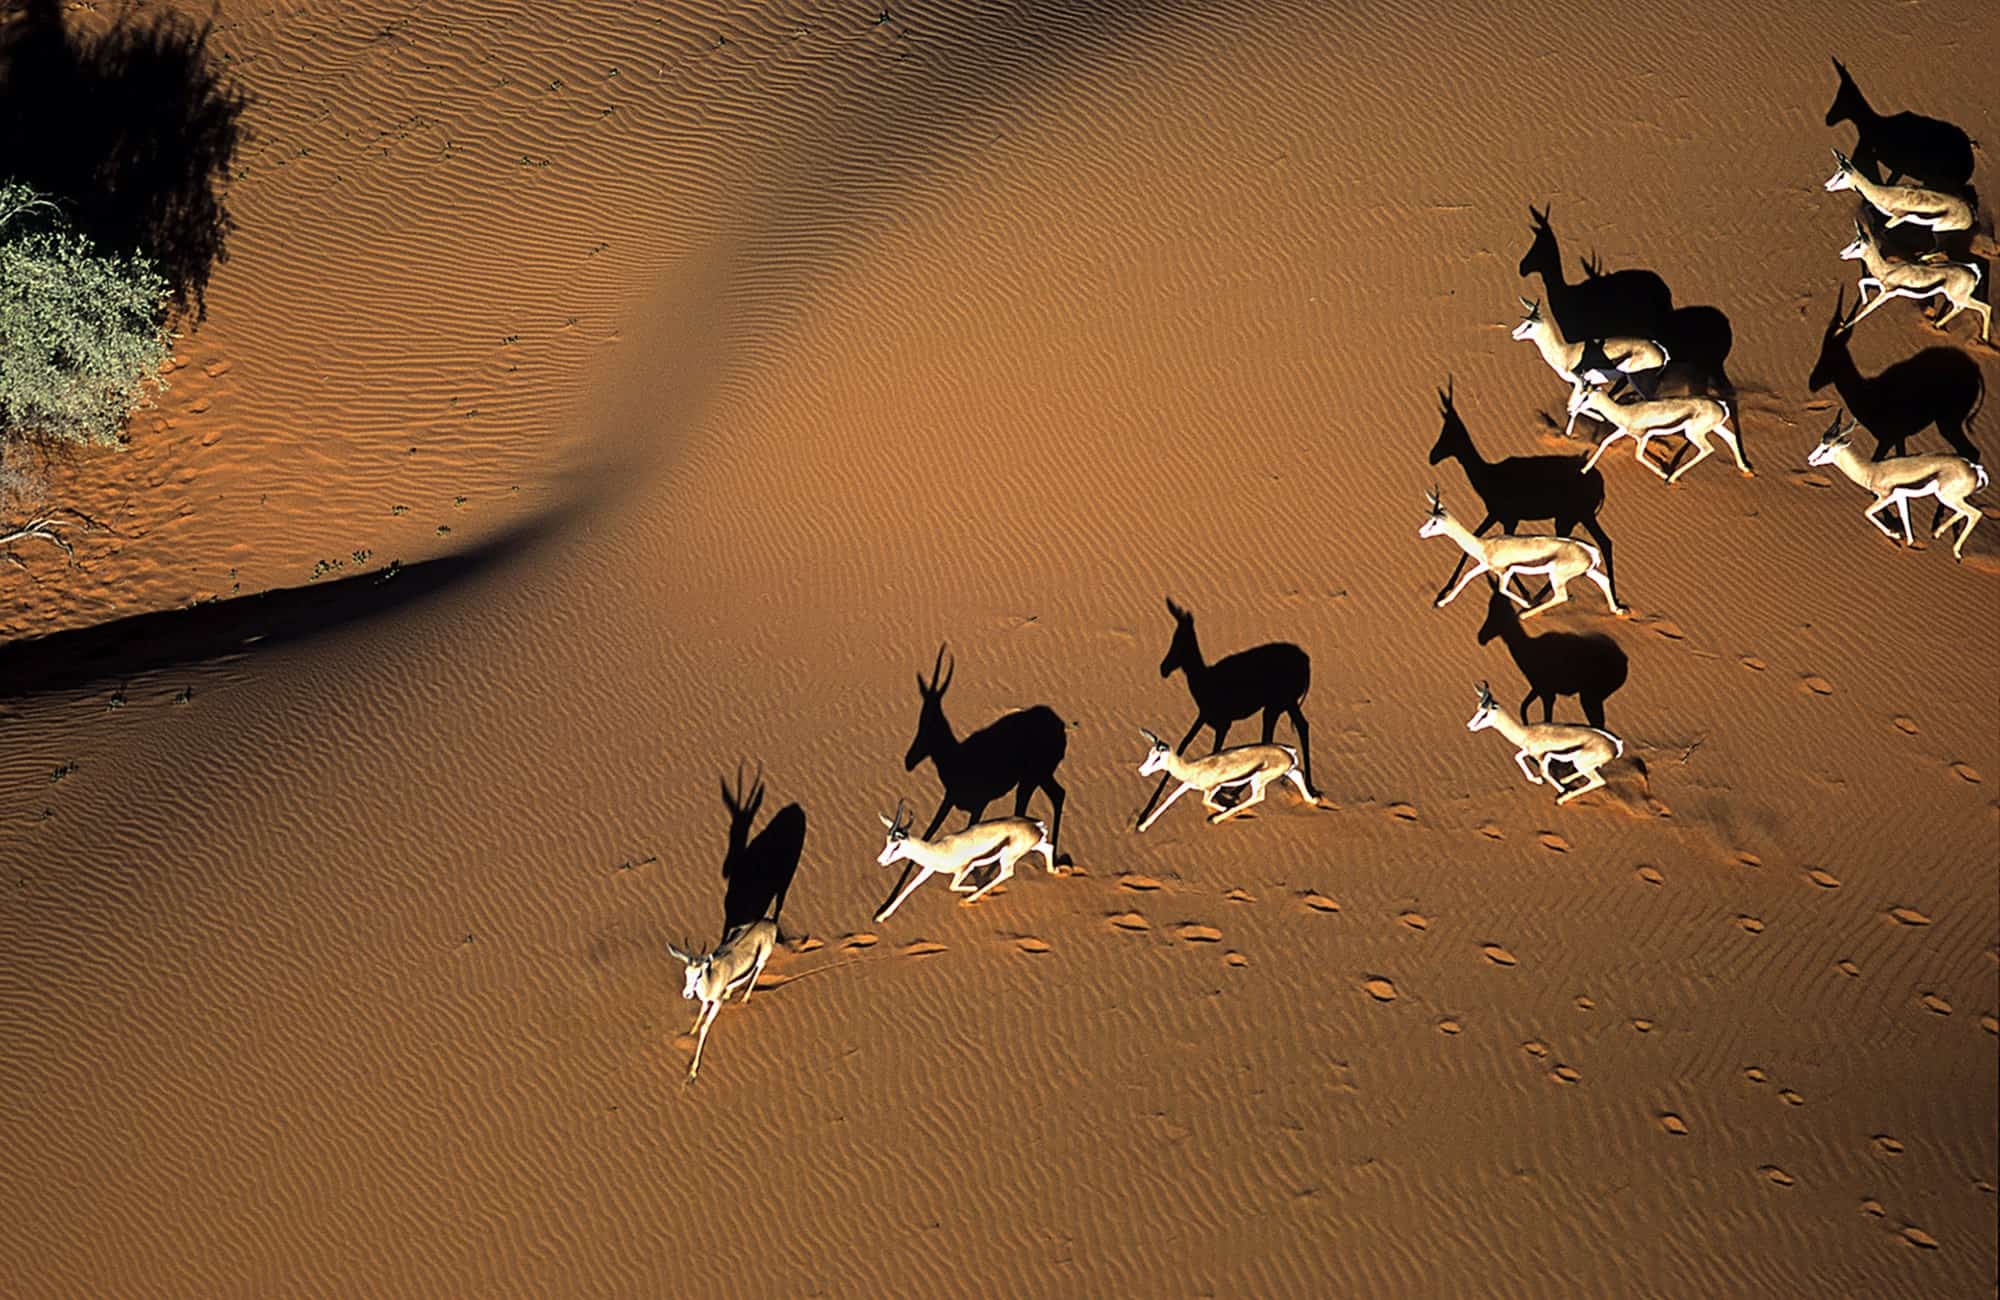 Gazelle's in Desert